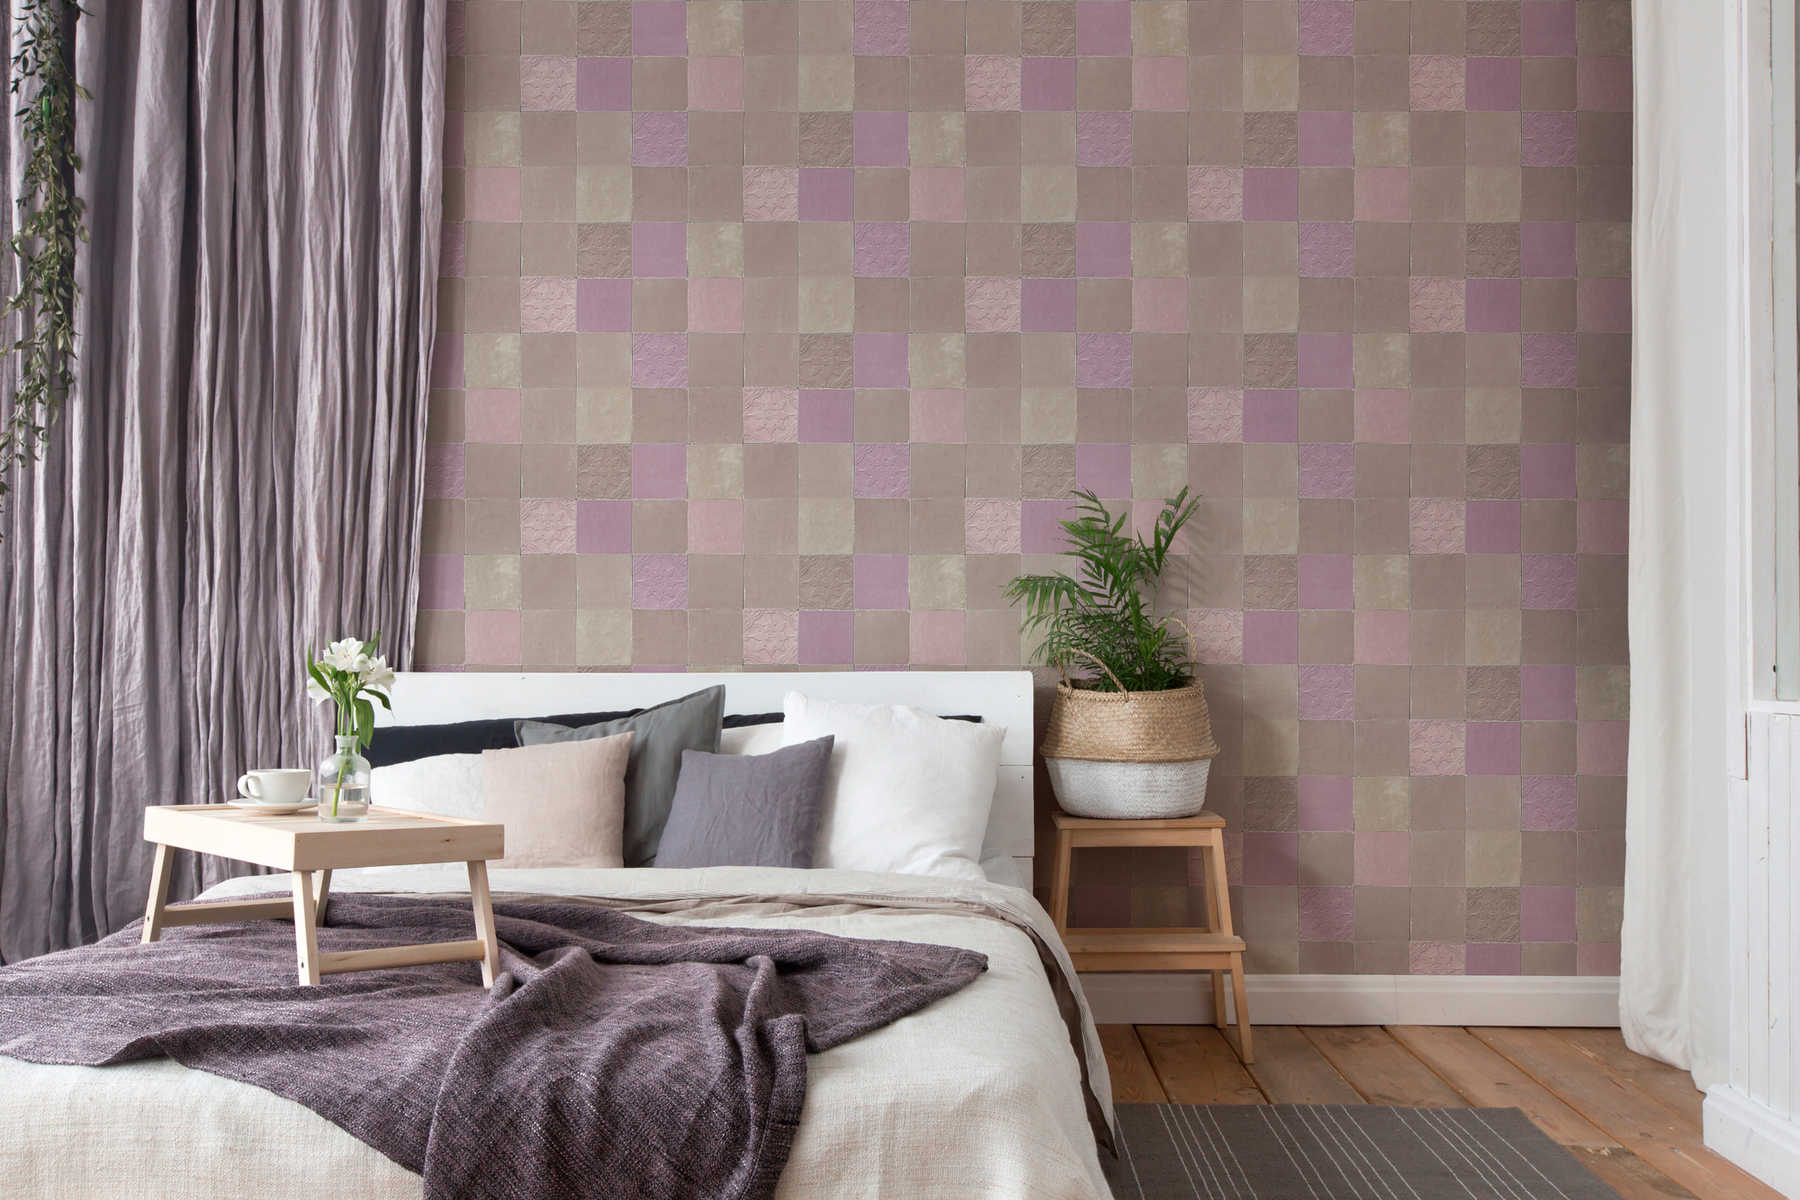             Oriental tile wallpaper - grey, purple, beige
        